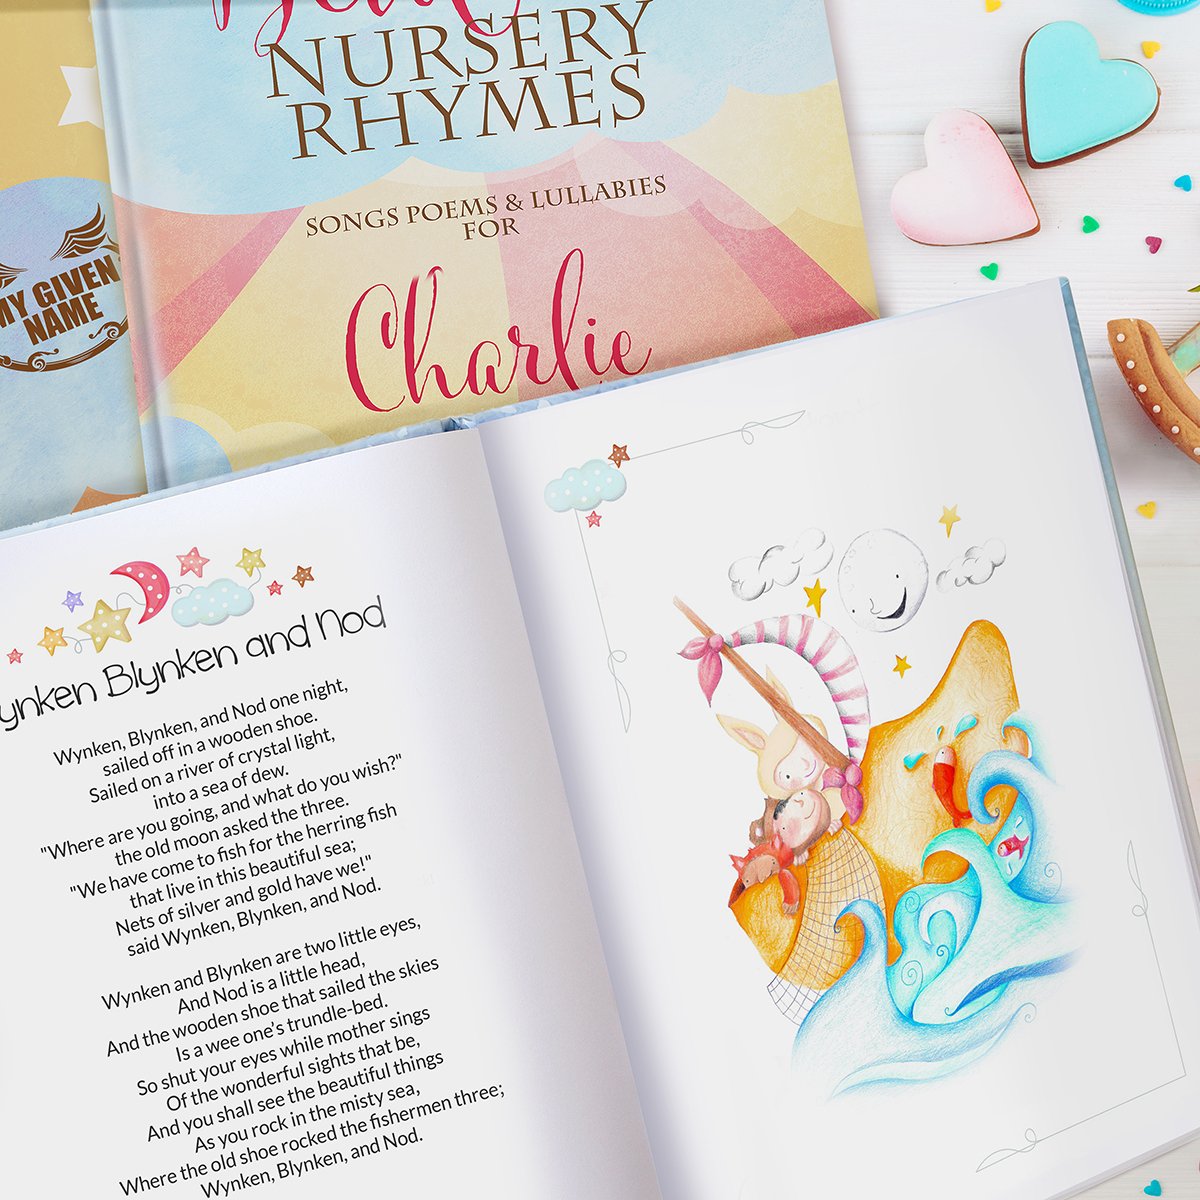 Personalised Children's Book - Bedtime Nursery Rhymes & Poems